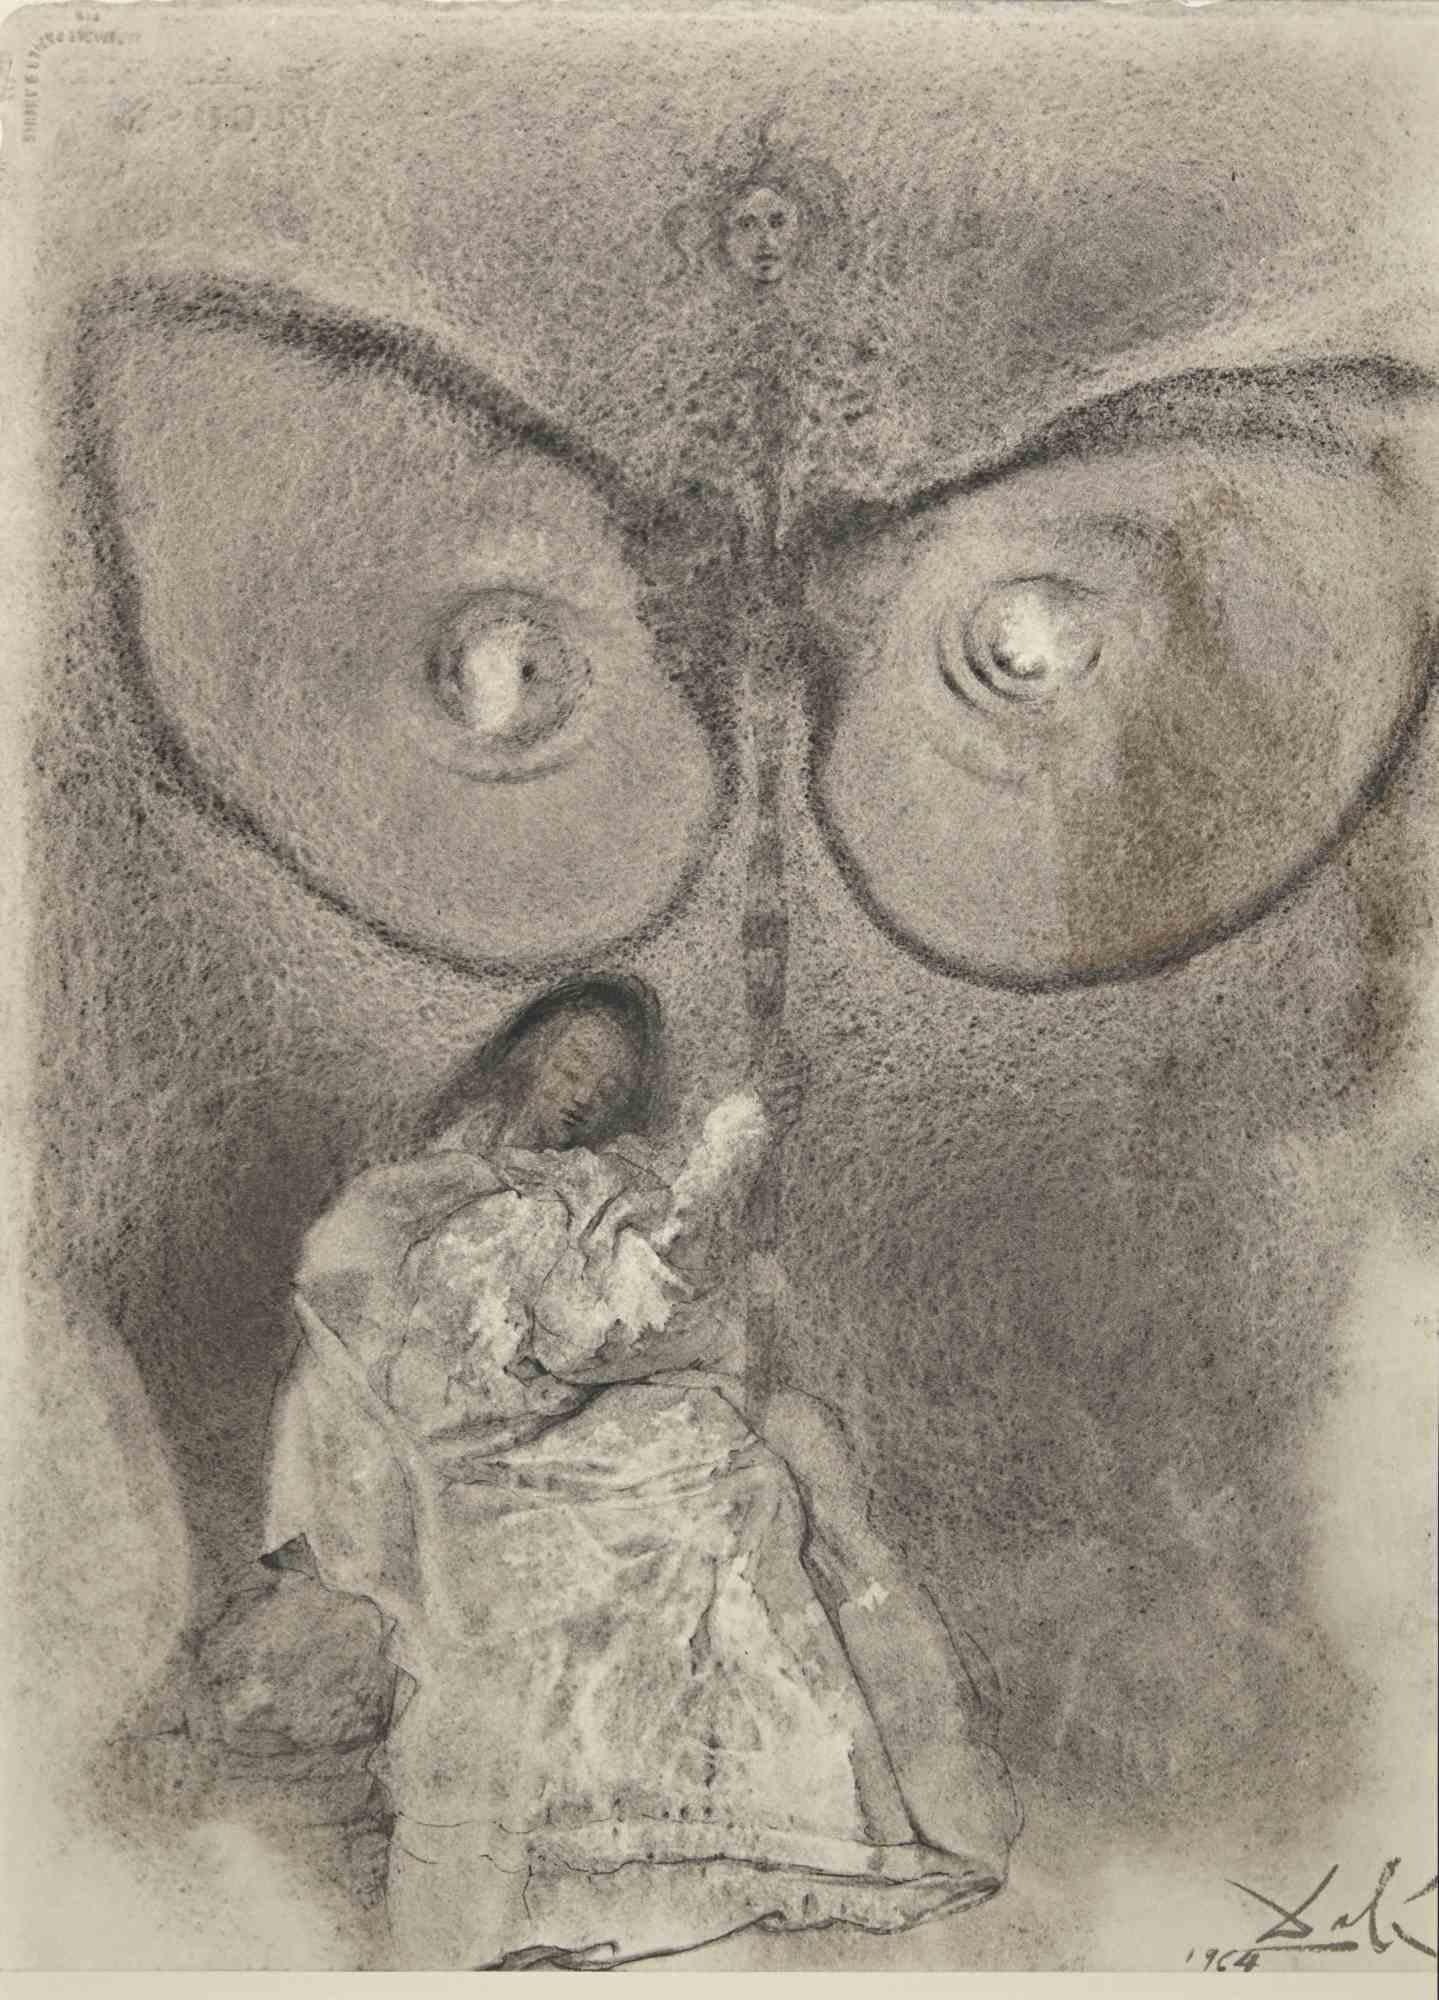 Antequam Exires De Vulva ... - Lithograph - 1964 - Print by Salvador Dalí